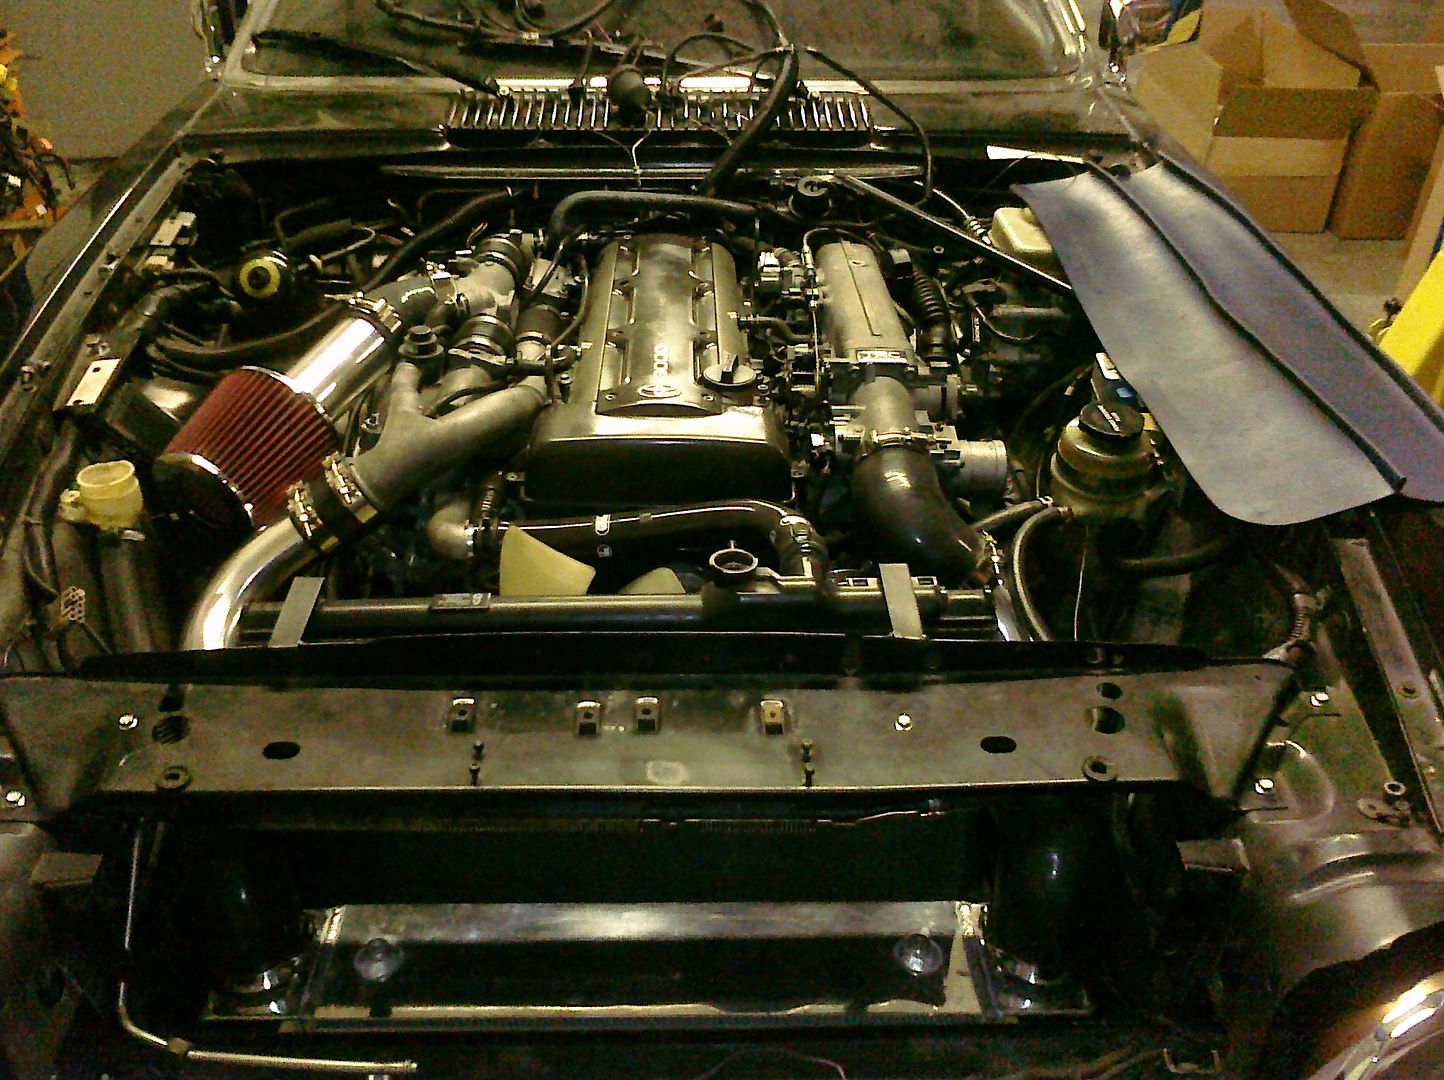 2JZ inside engine bay of Jaguar XJS